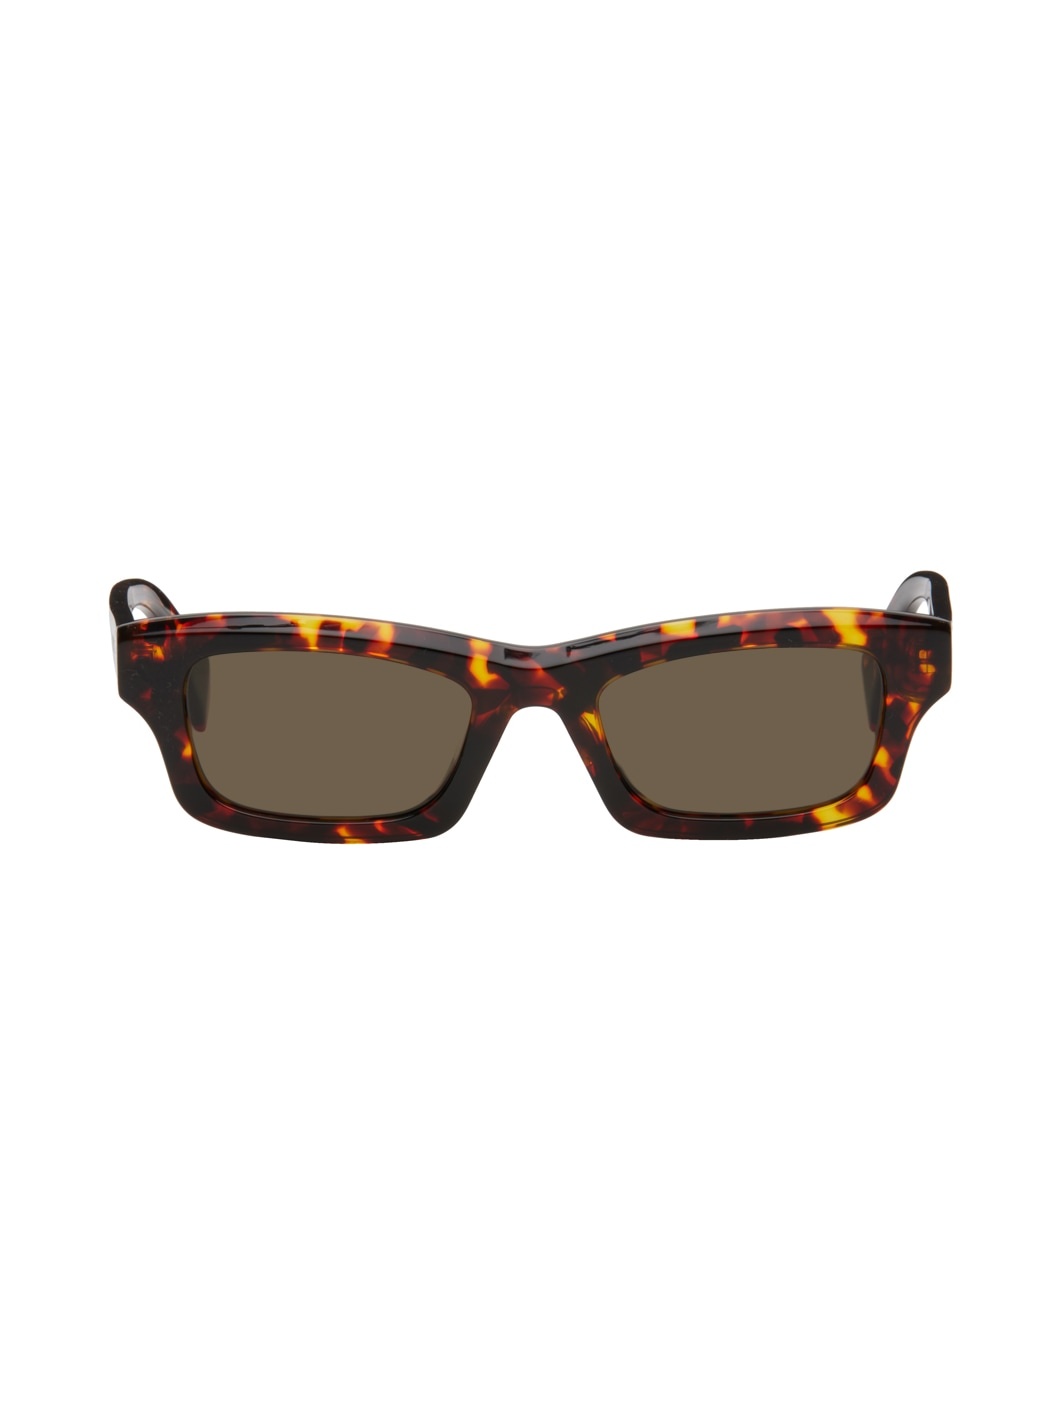 Tortoiseshell Rectangular Sunglasses - 1